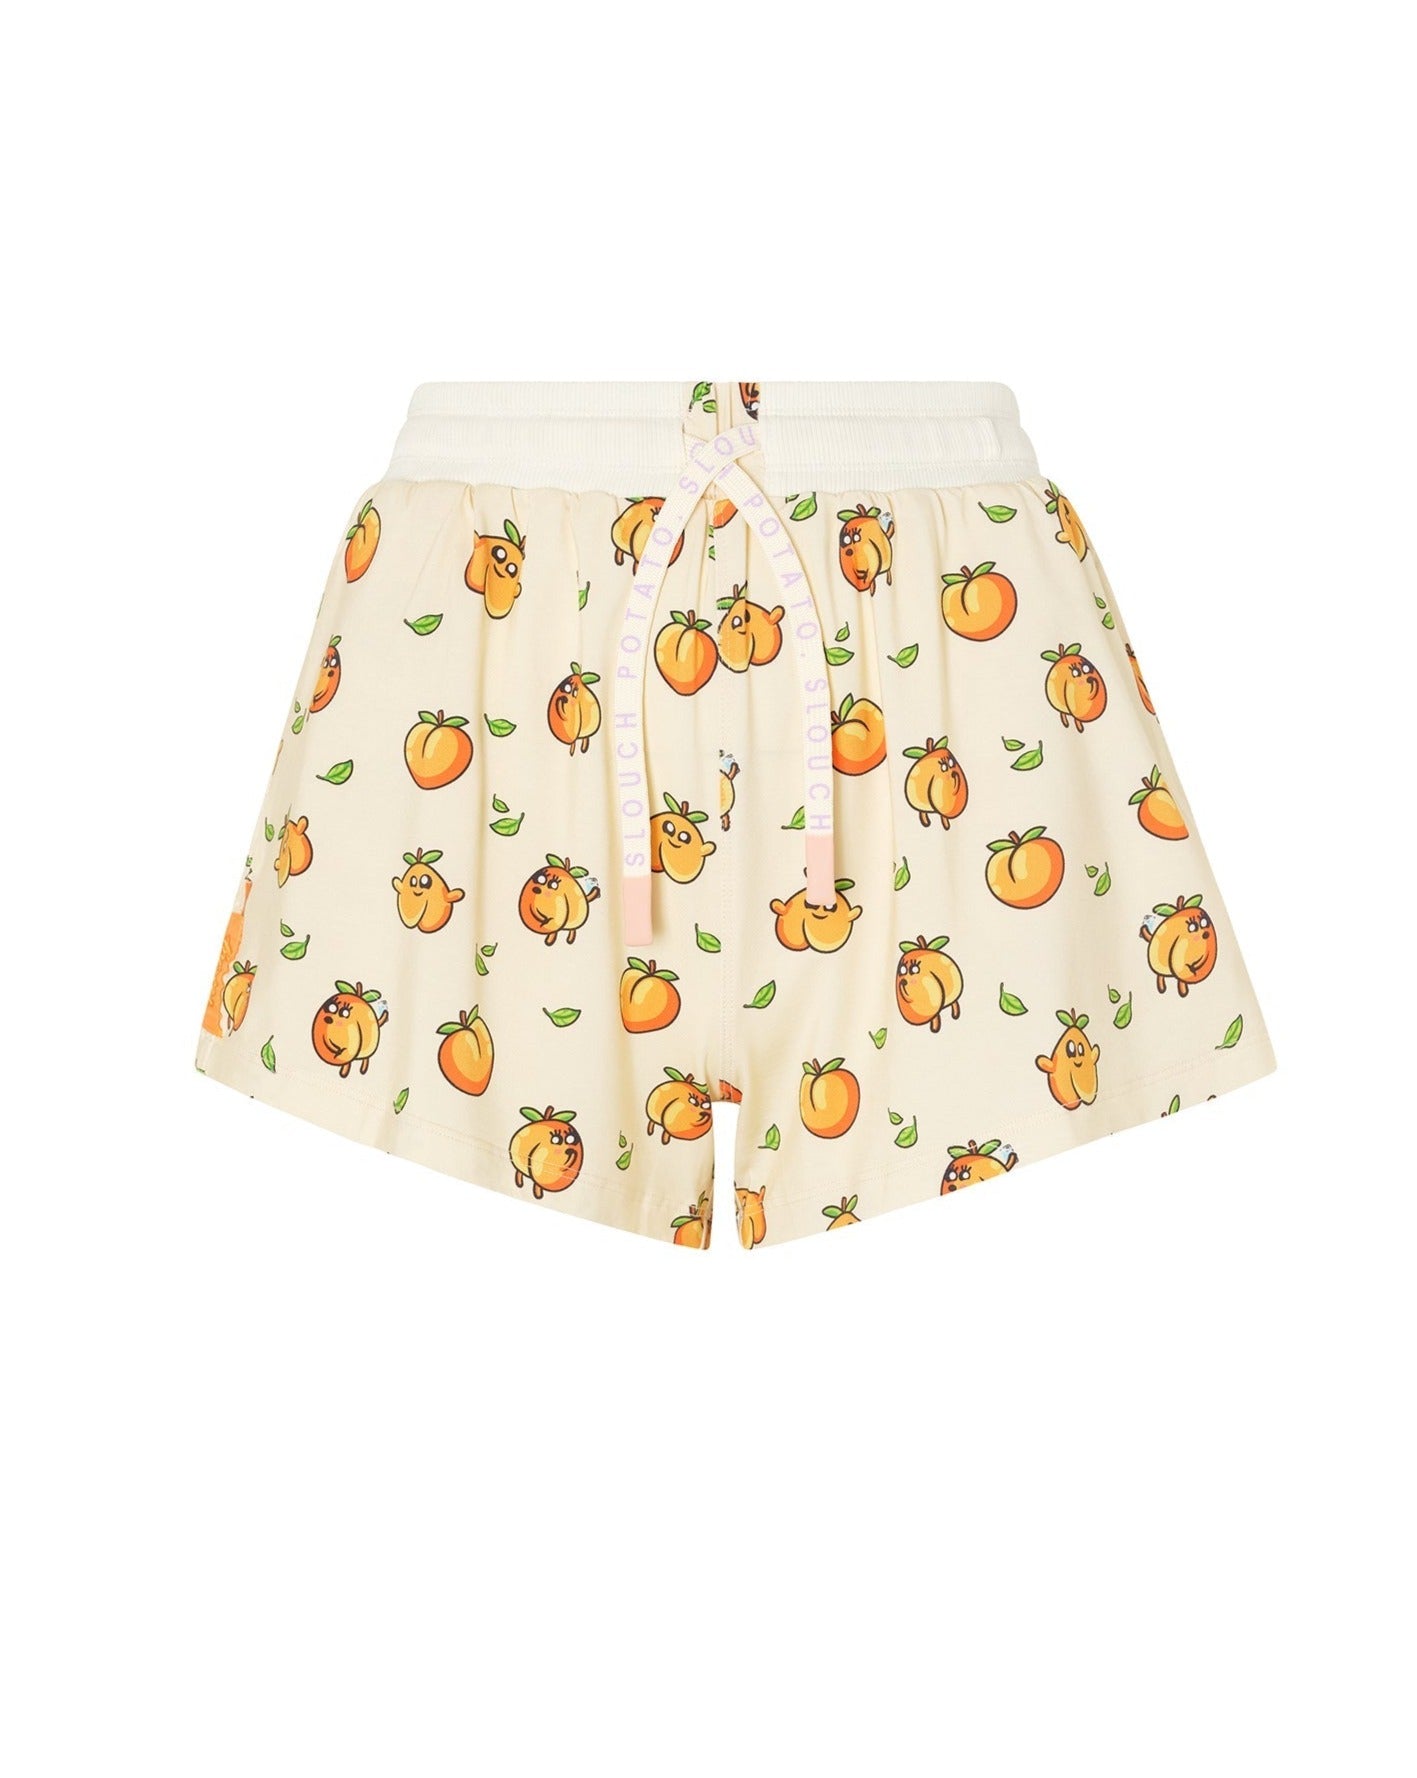 Peach Pj Shorts Peach 